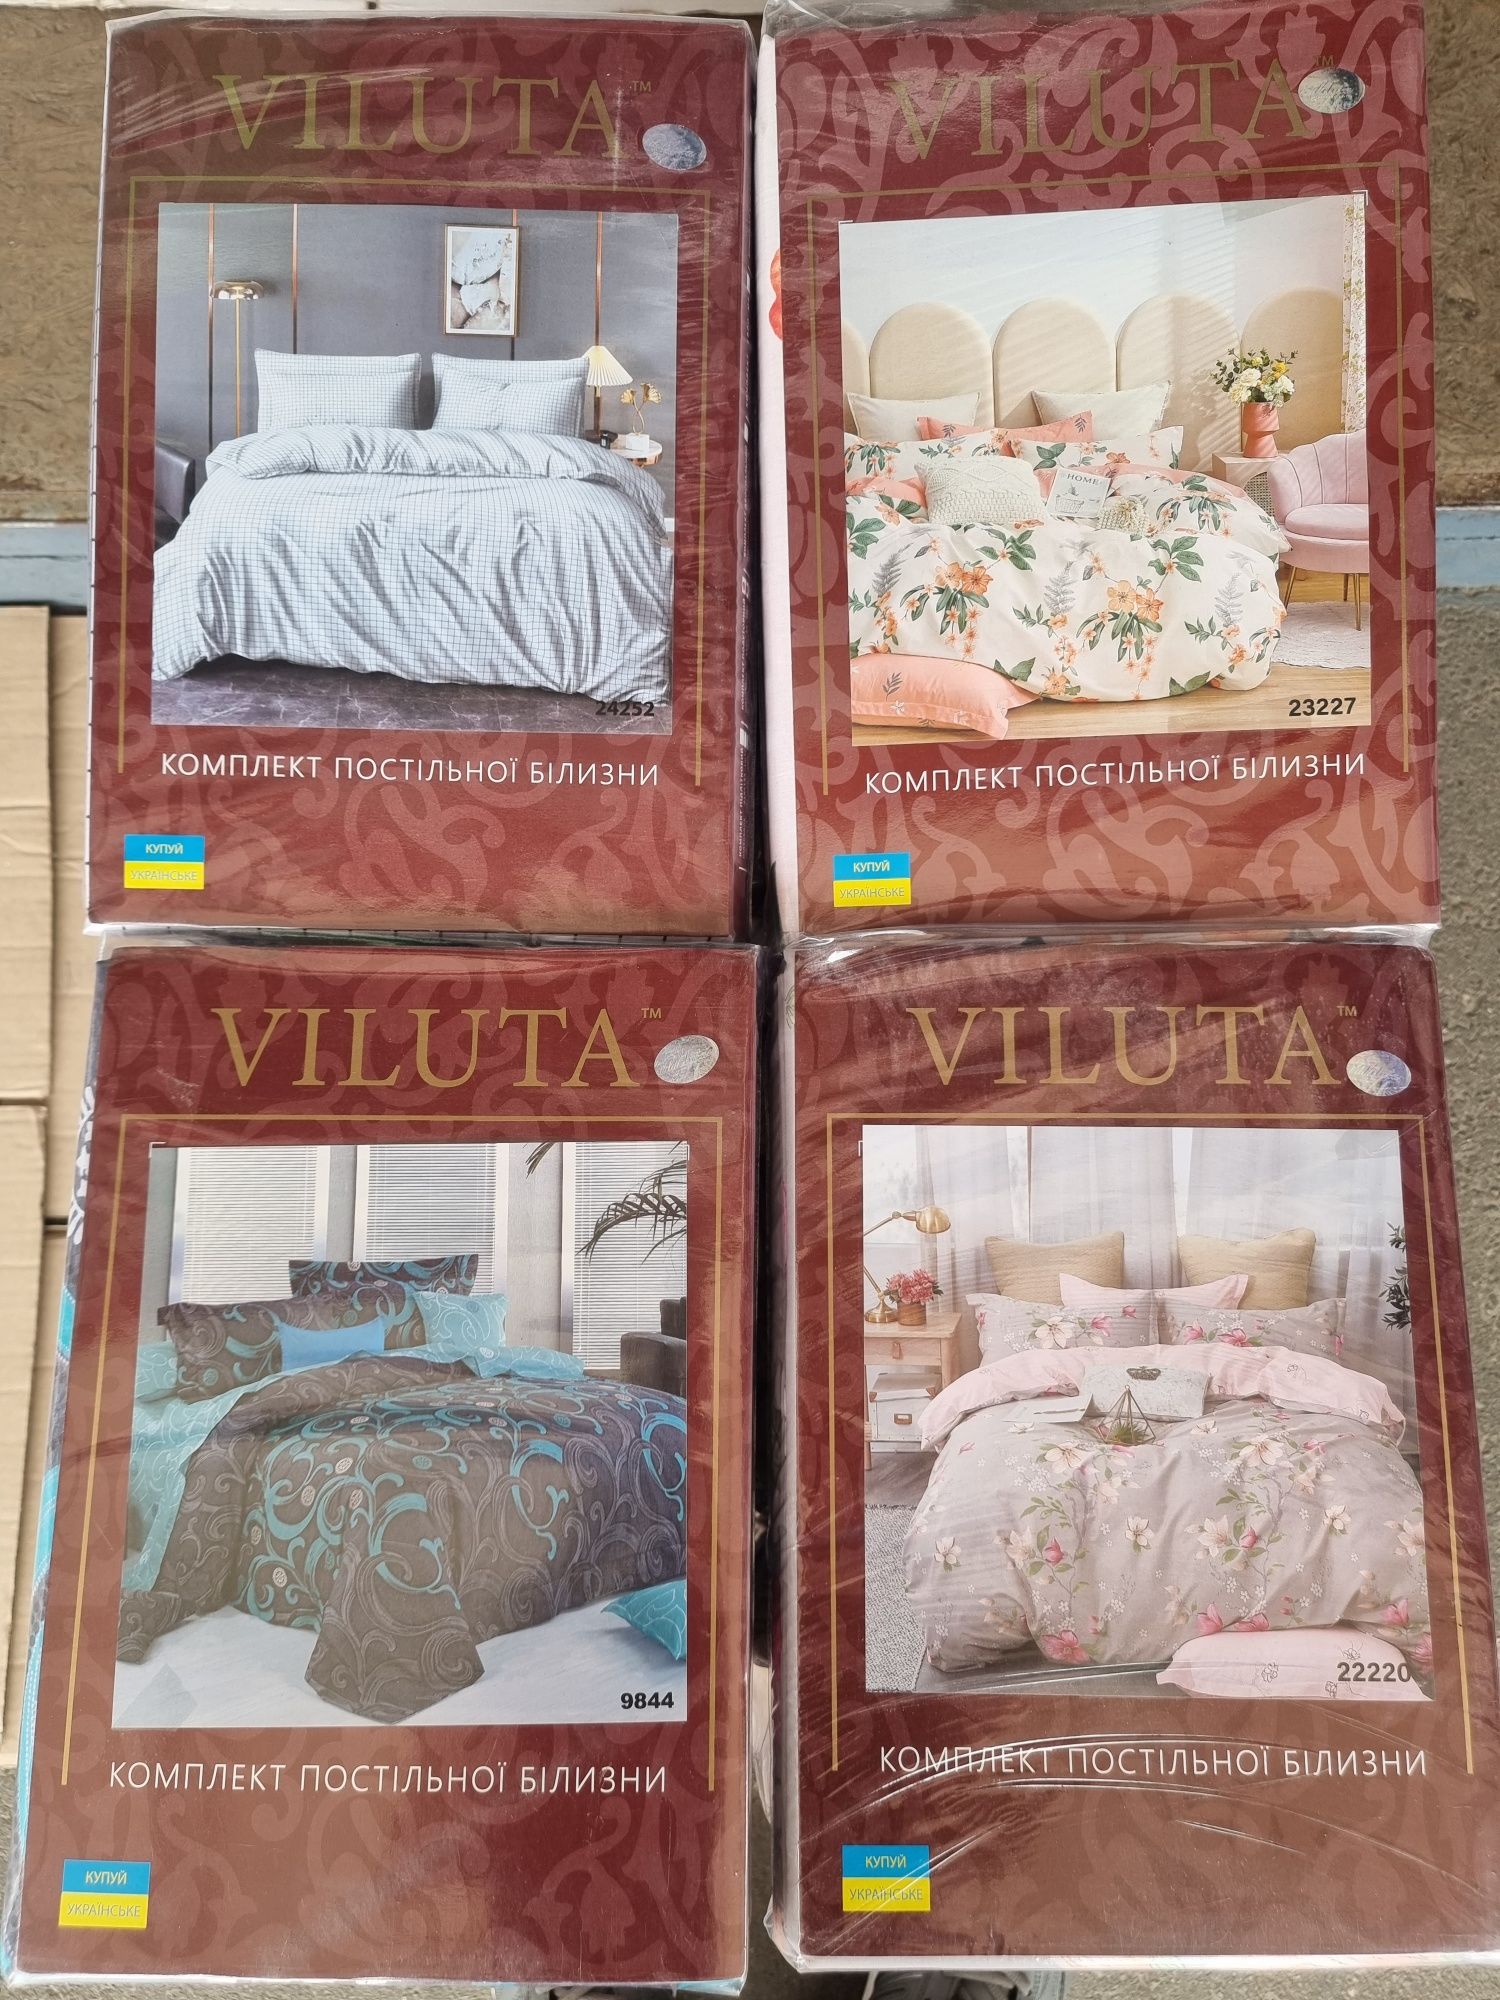 Комплекти постільної білизни фірми Viluta.